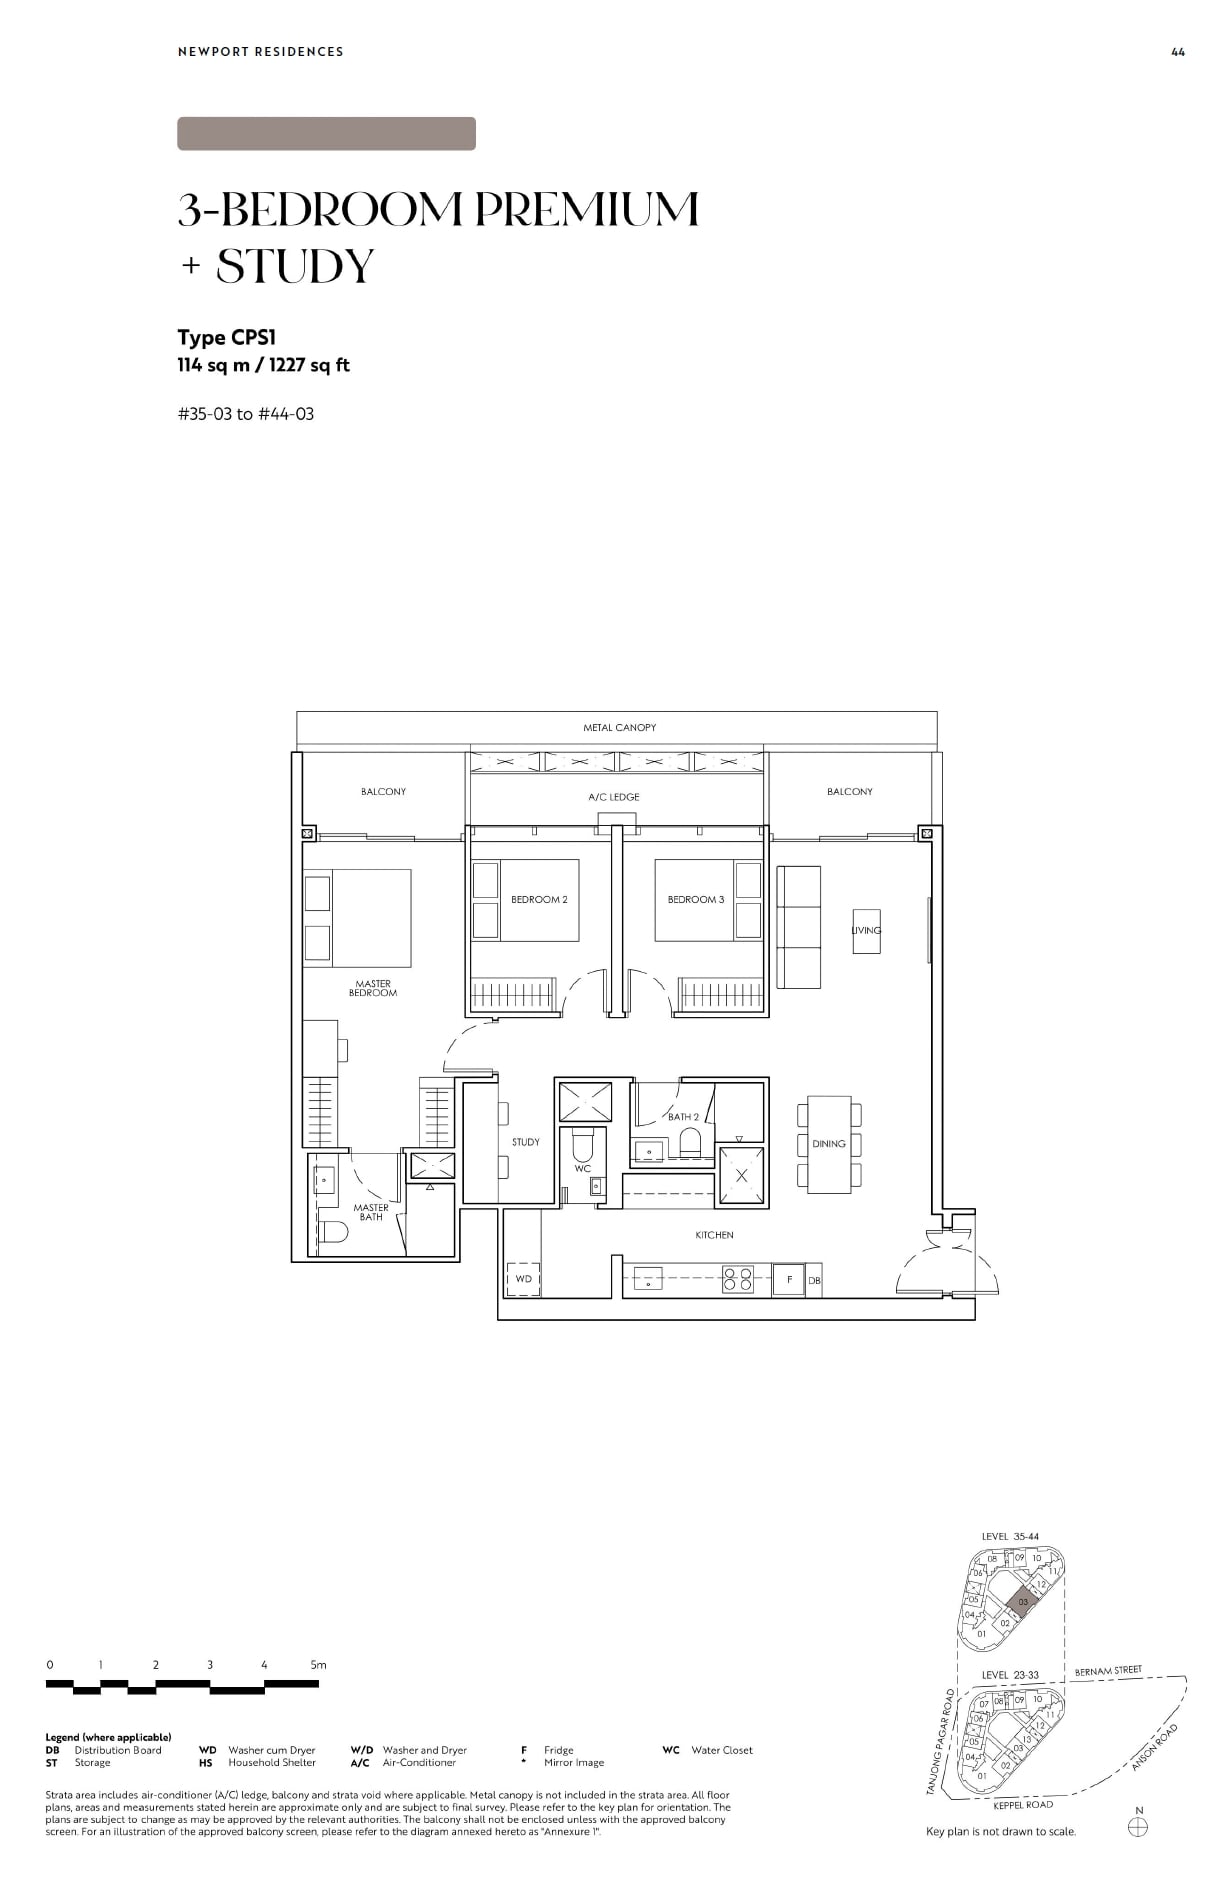 fp-newport-residences-cps1-floor-plan.jpg